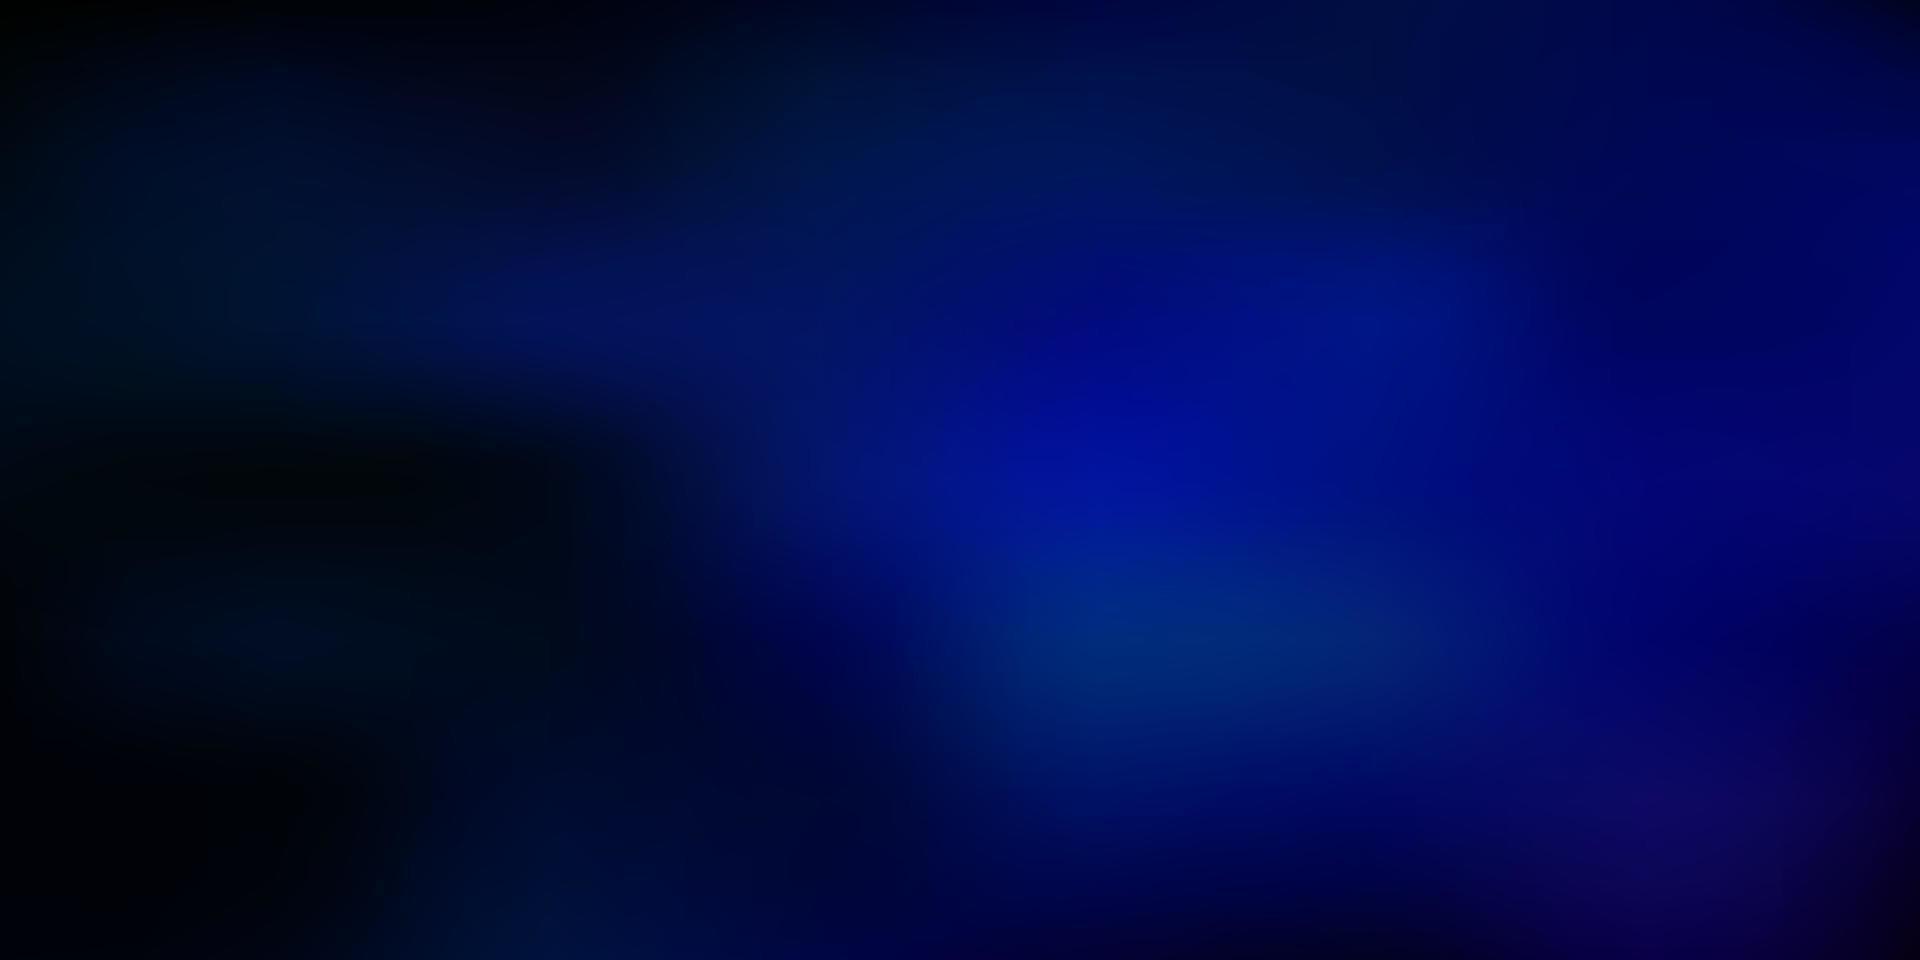 mörkrosa, blå vektor abstrakt oskärpa layout.